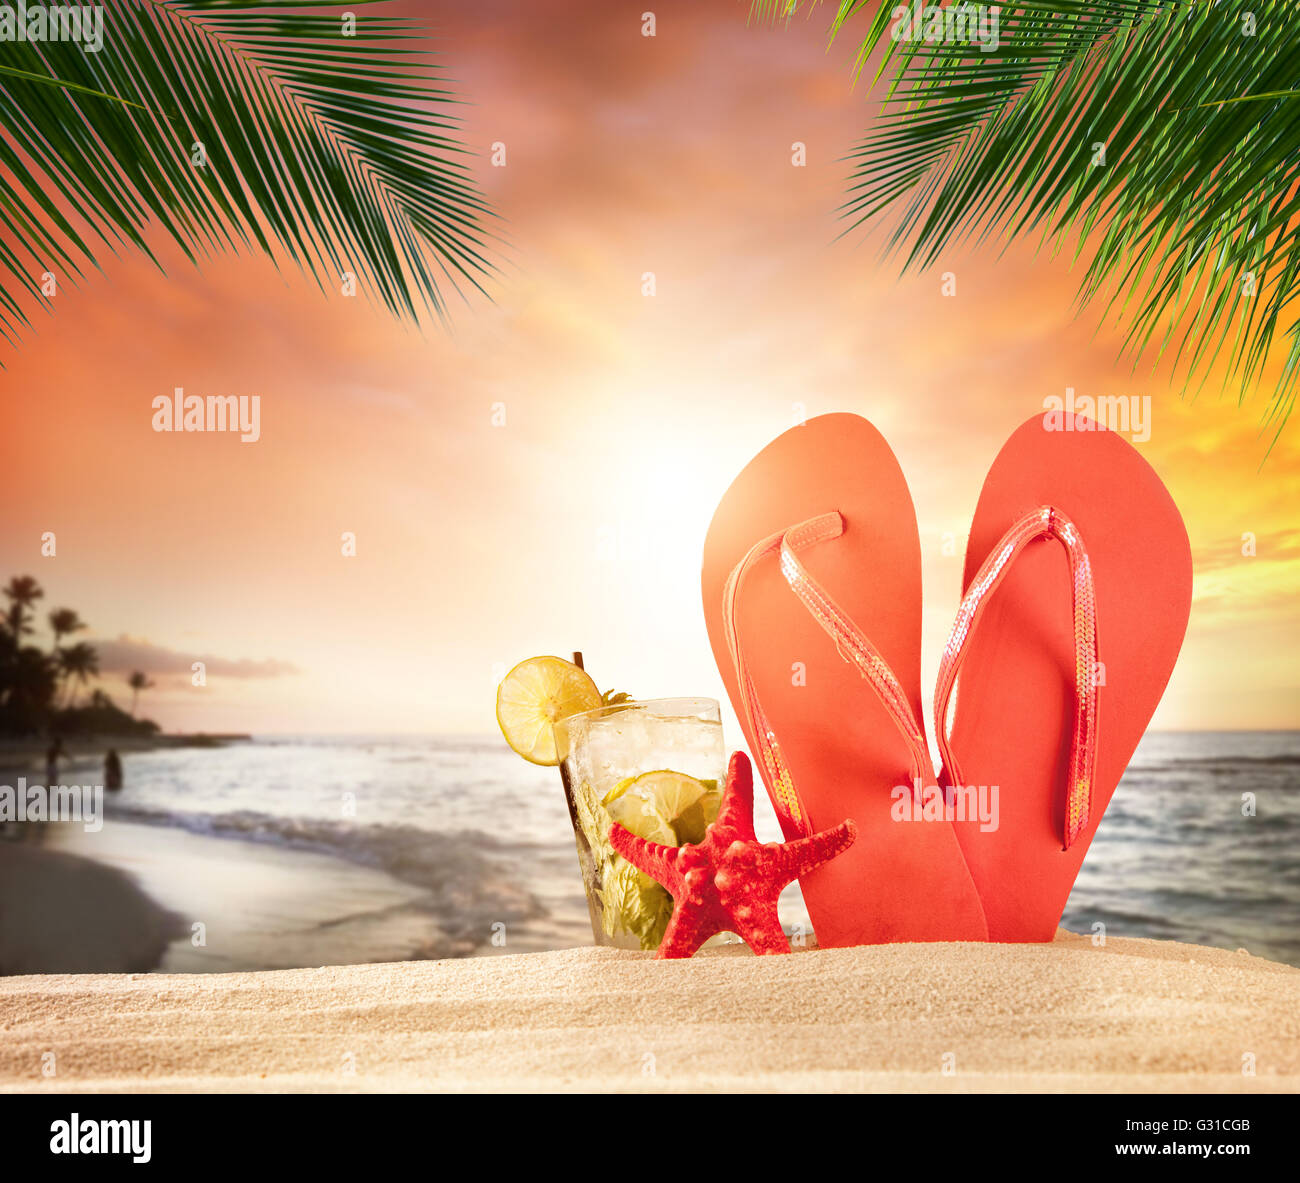 Plage tropicale avec un verre et des accessoires dans le magnifique coucher de soleil avec des feuilles de palmier sur le premier plan. Copyspace pour le texte Banque D'Images